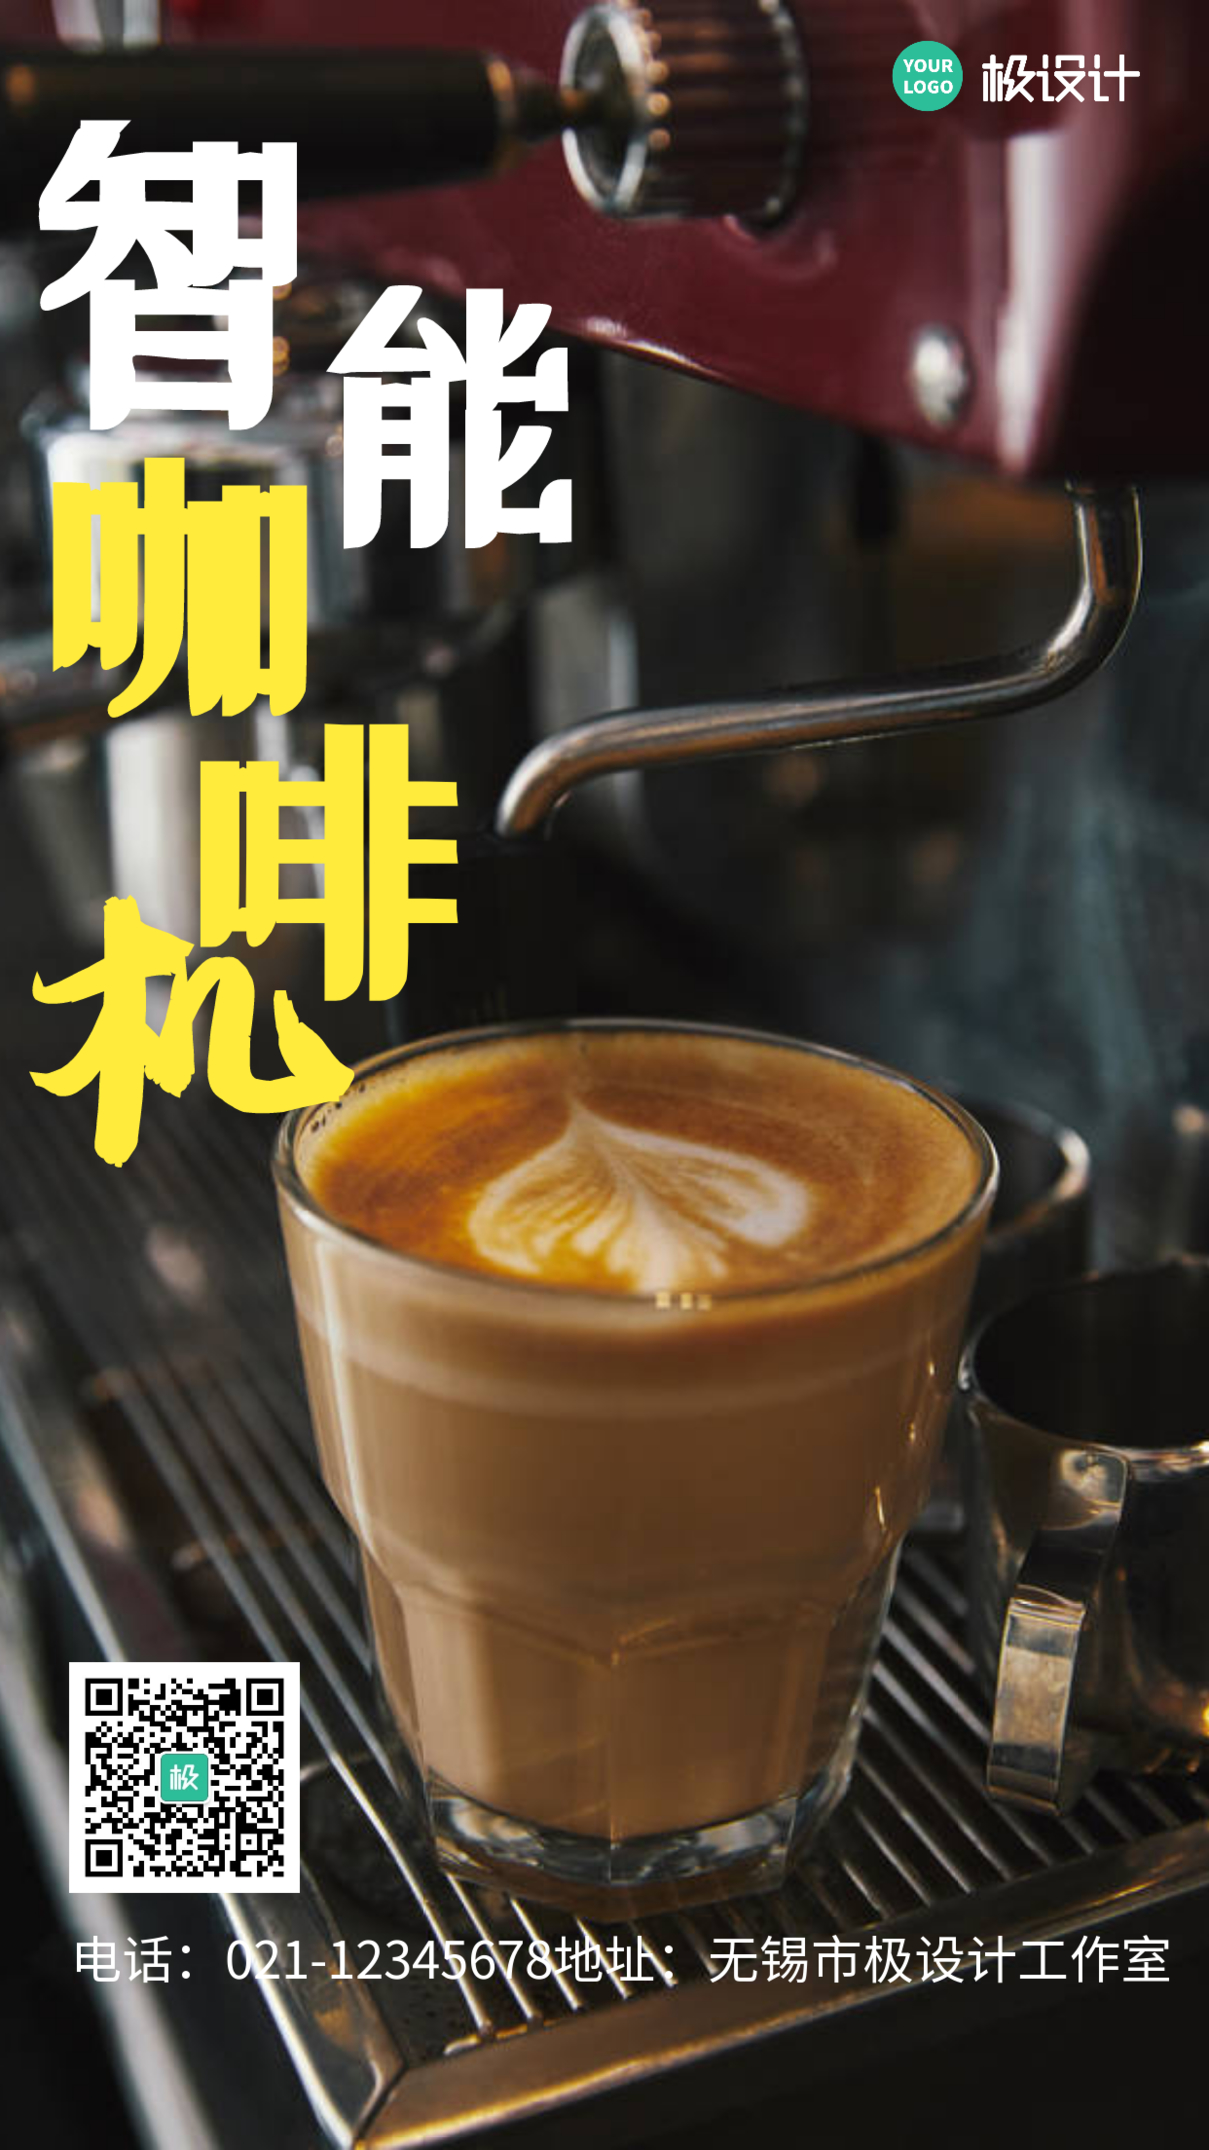 智能咖啡机宣传促销摄影图手机海报